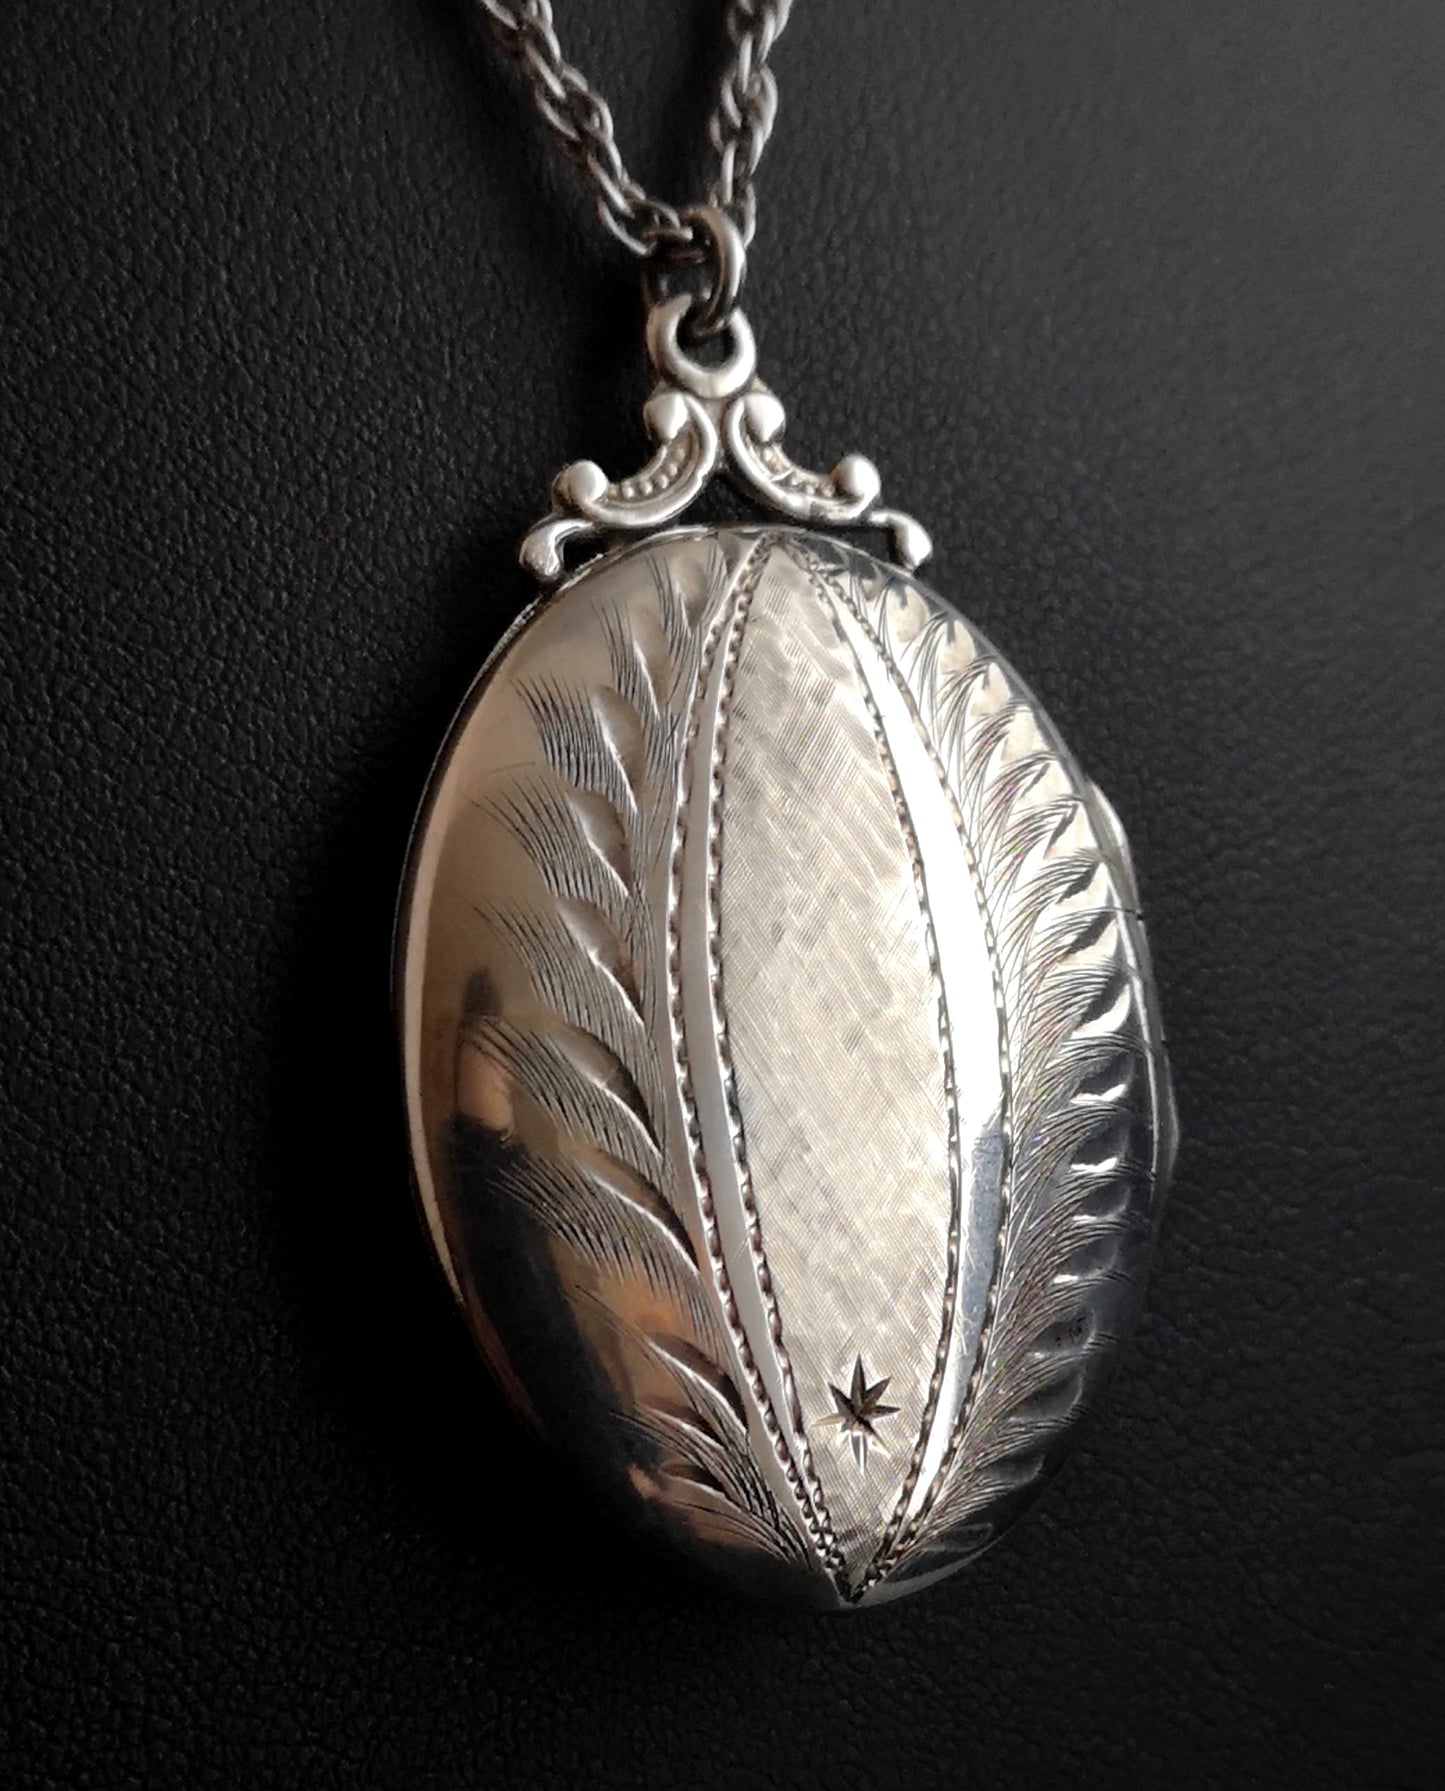 Vintage sterling silver locket necklace, c1960s